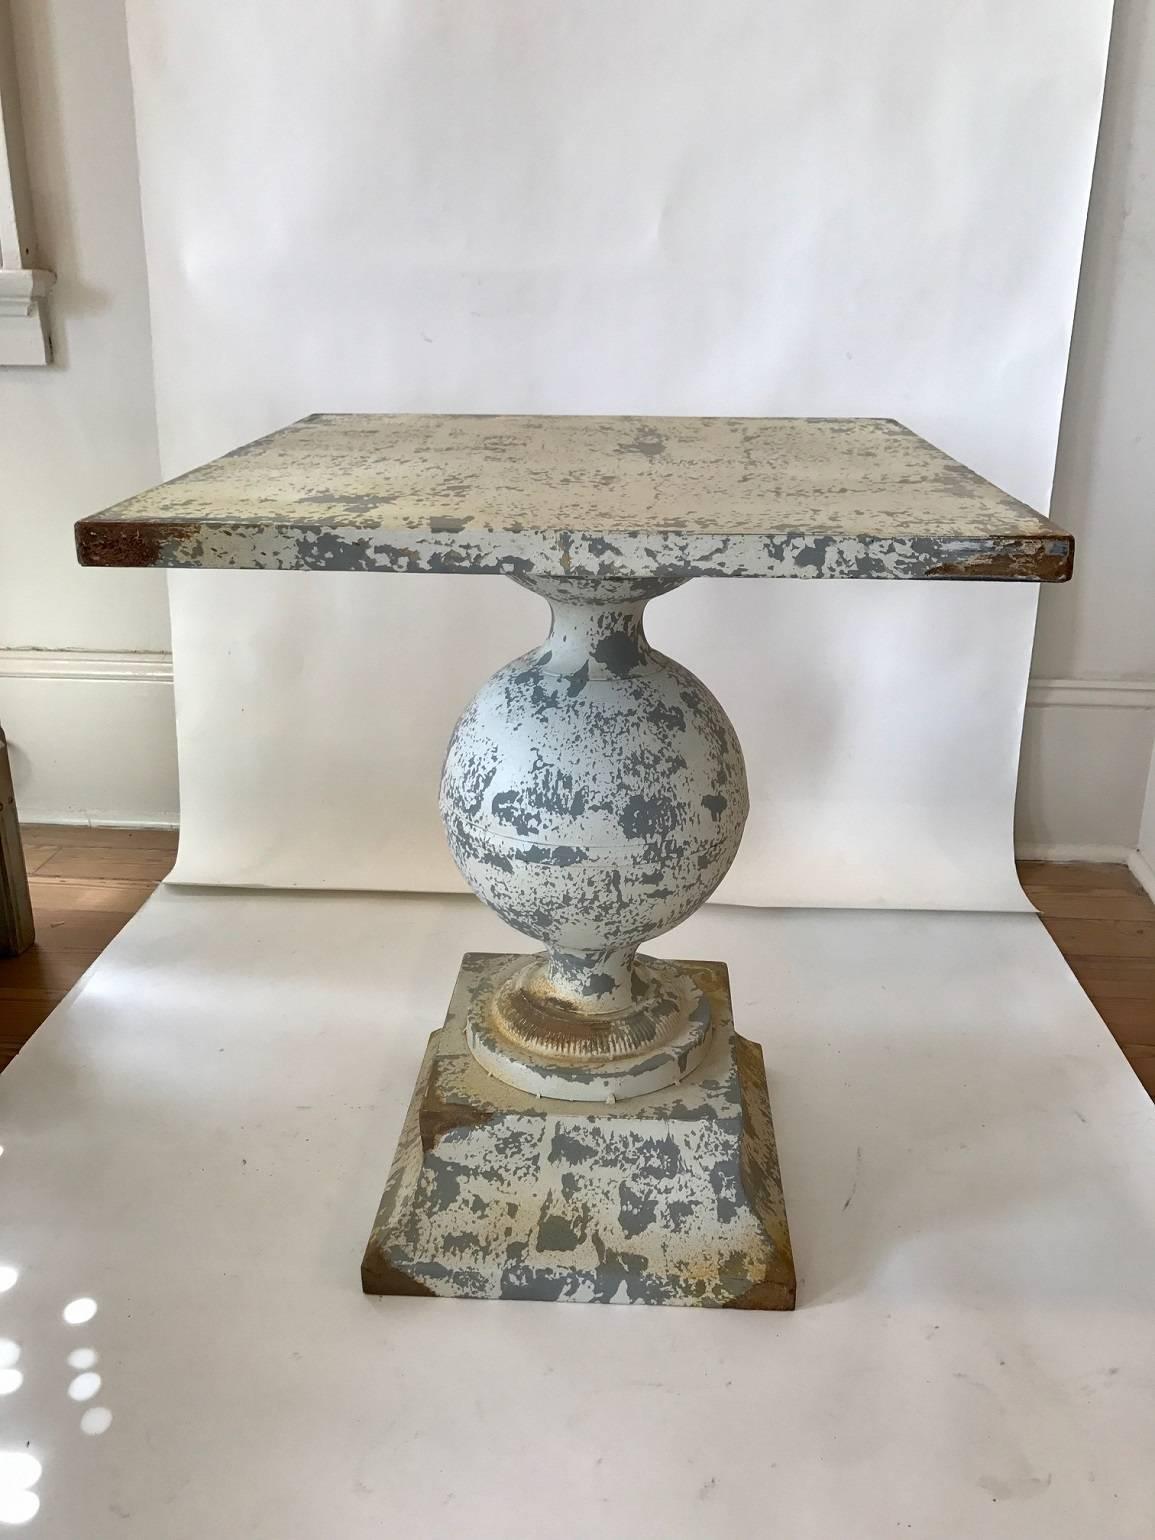 Zinc garden table with bulbous pedestal on square plinth; worn white paint.